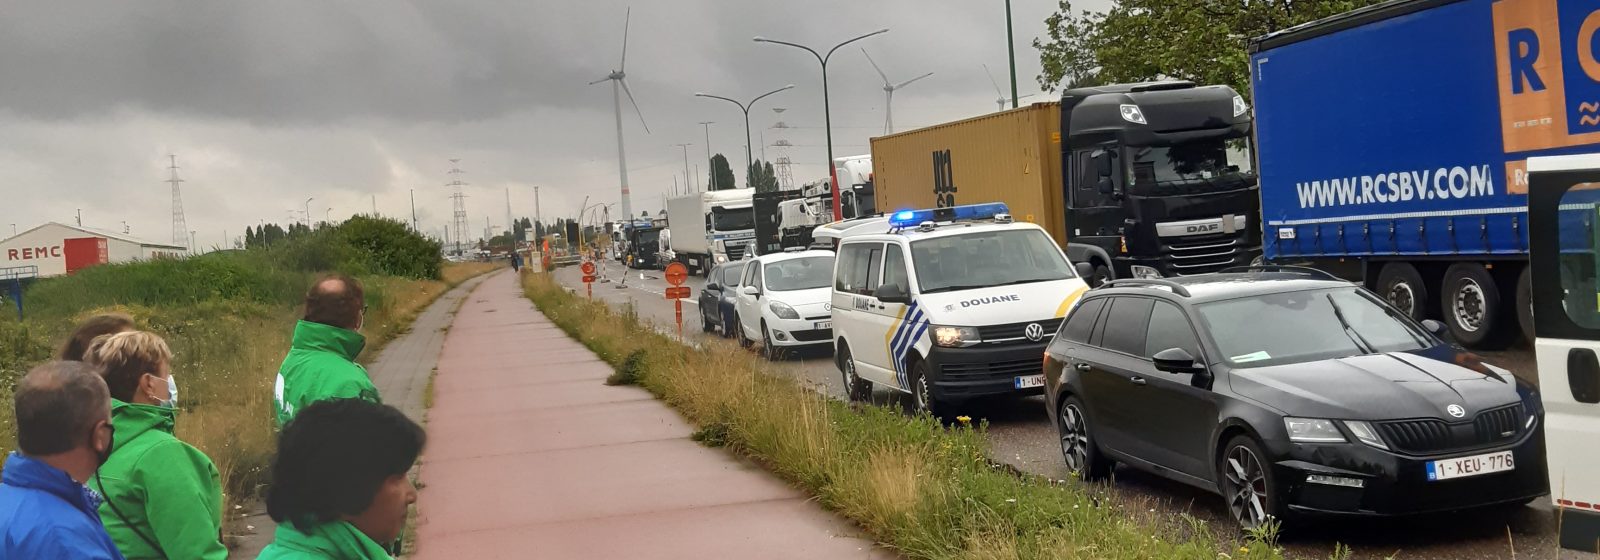 De douane voert actie op verschillende wegen in en rond Antwerpse haven